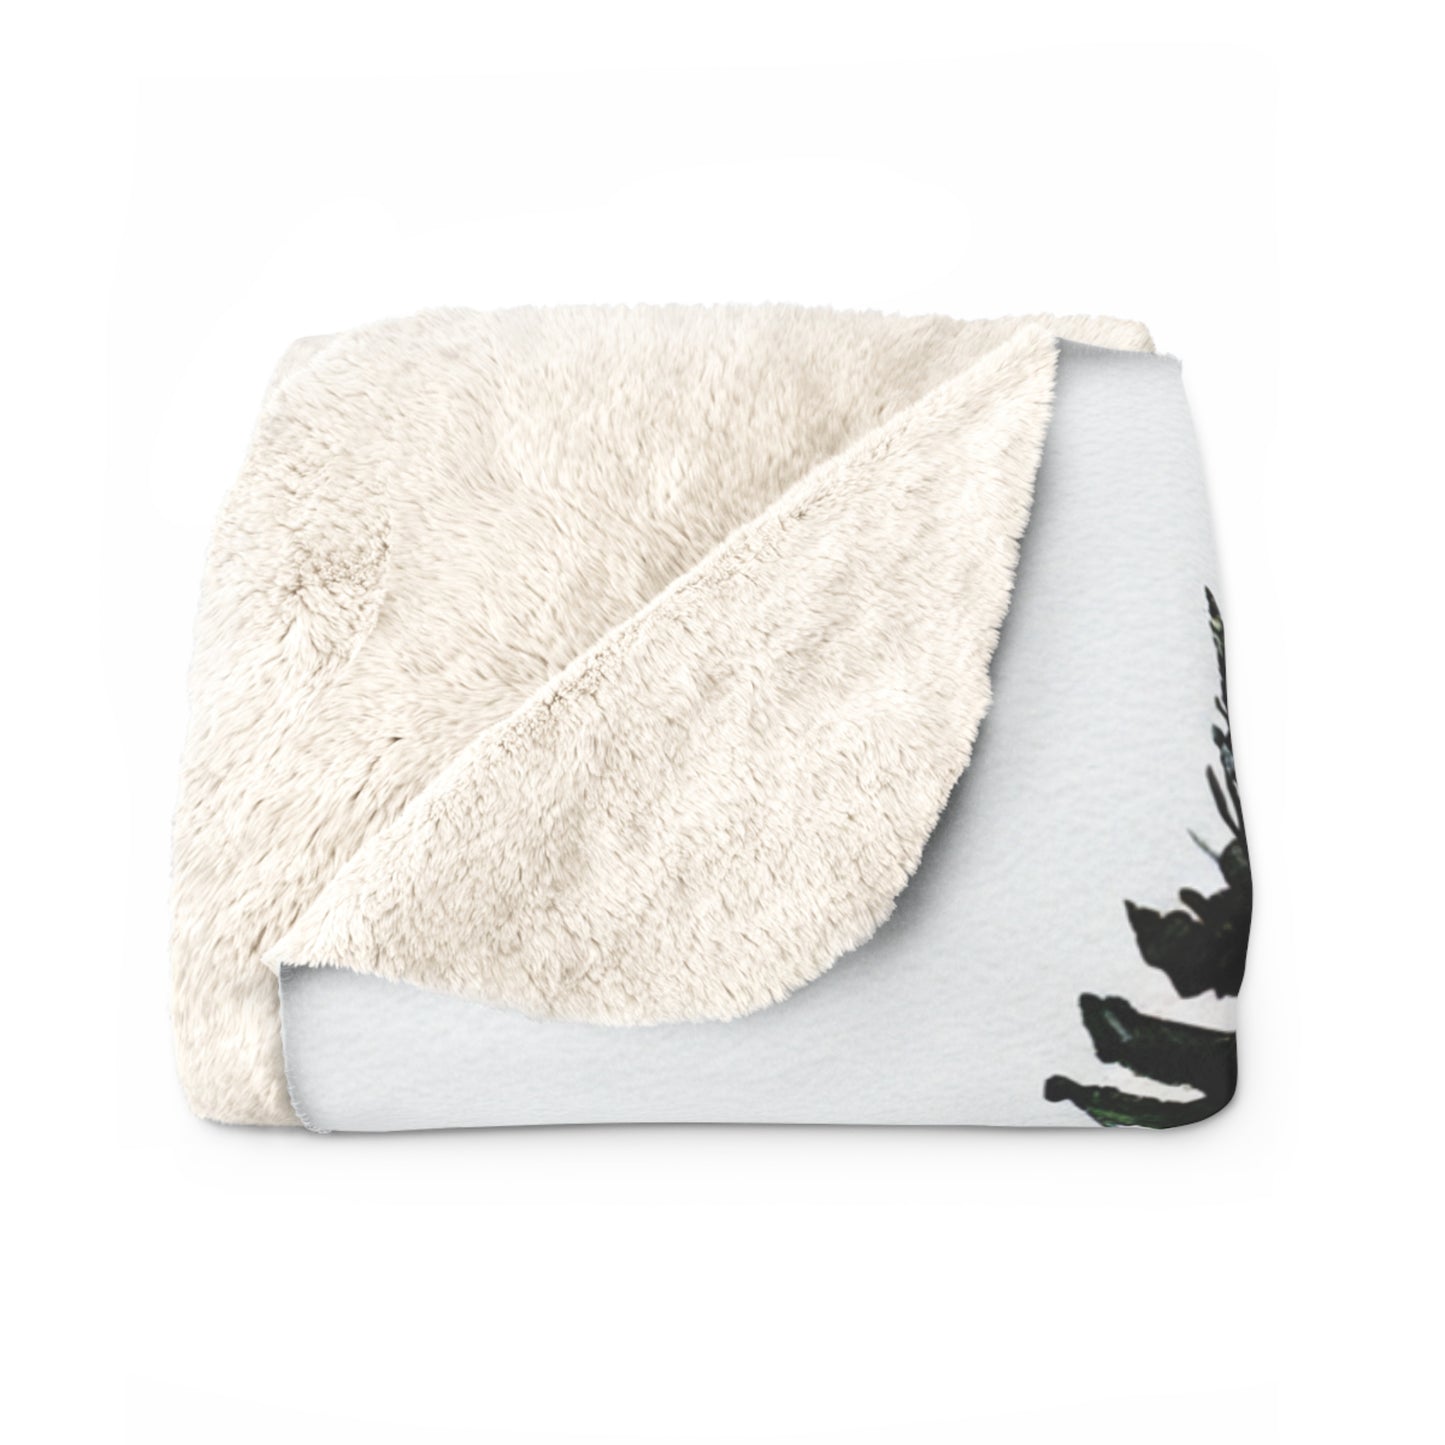 Cozy PNW Fleece Blanket, Cabin throw Blanket, Blanket Gift, Watercolor Fir Trees throw blanket decor gift